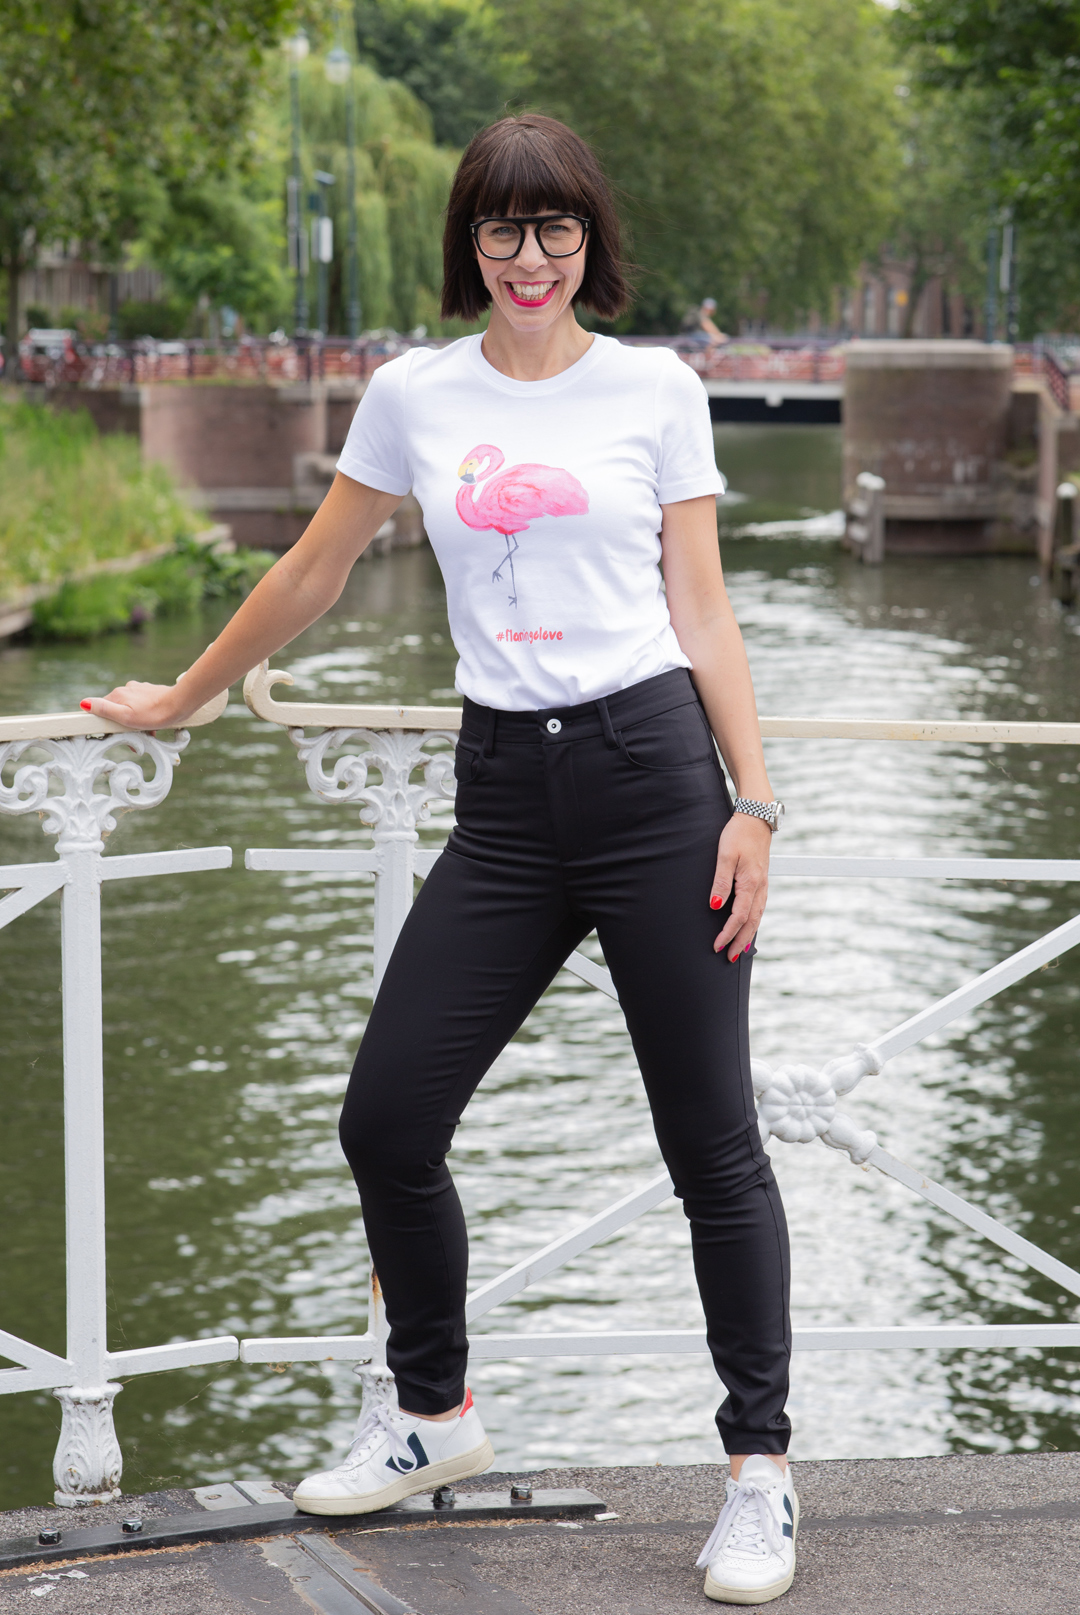 Weißes T-Shirt mit einem rosaroten Flamingo - das eigene designte T-Shirt